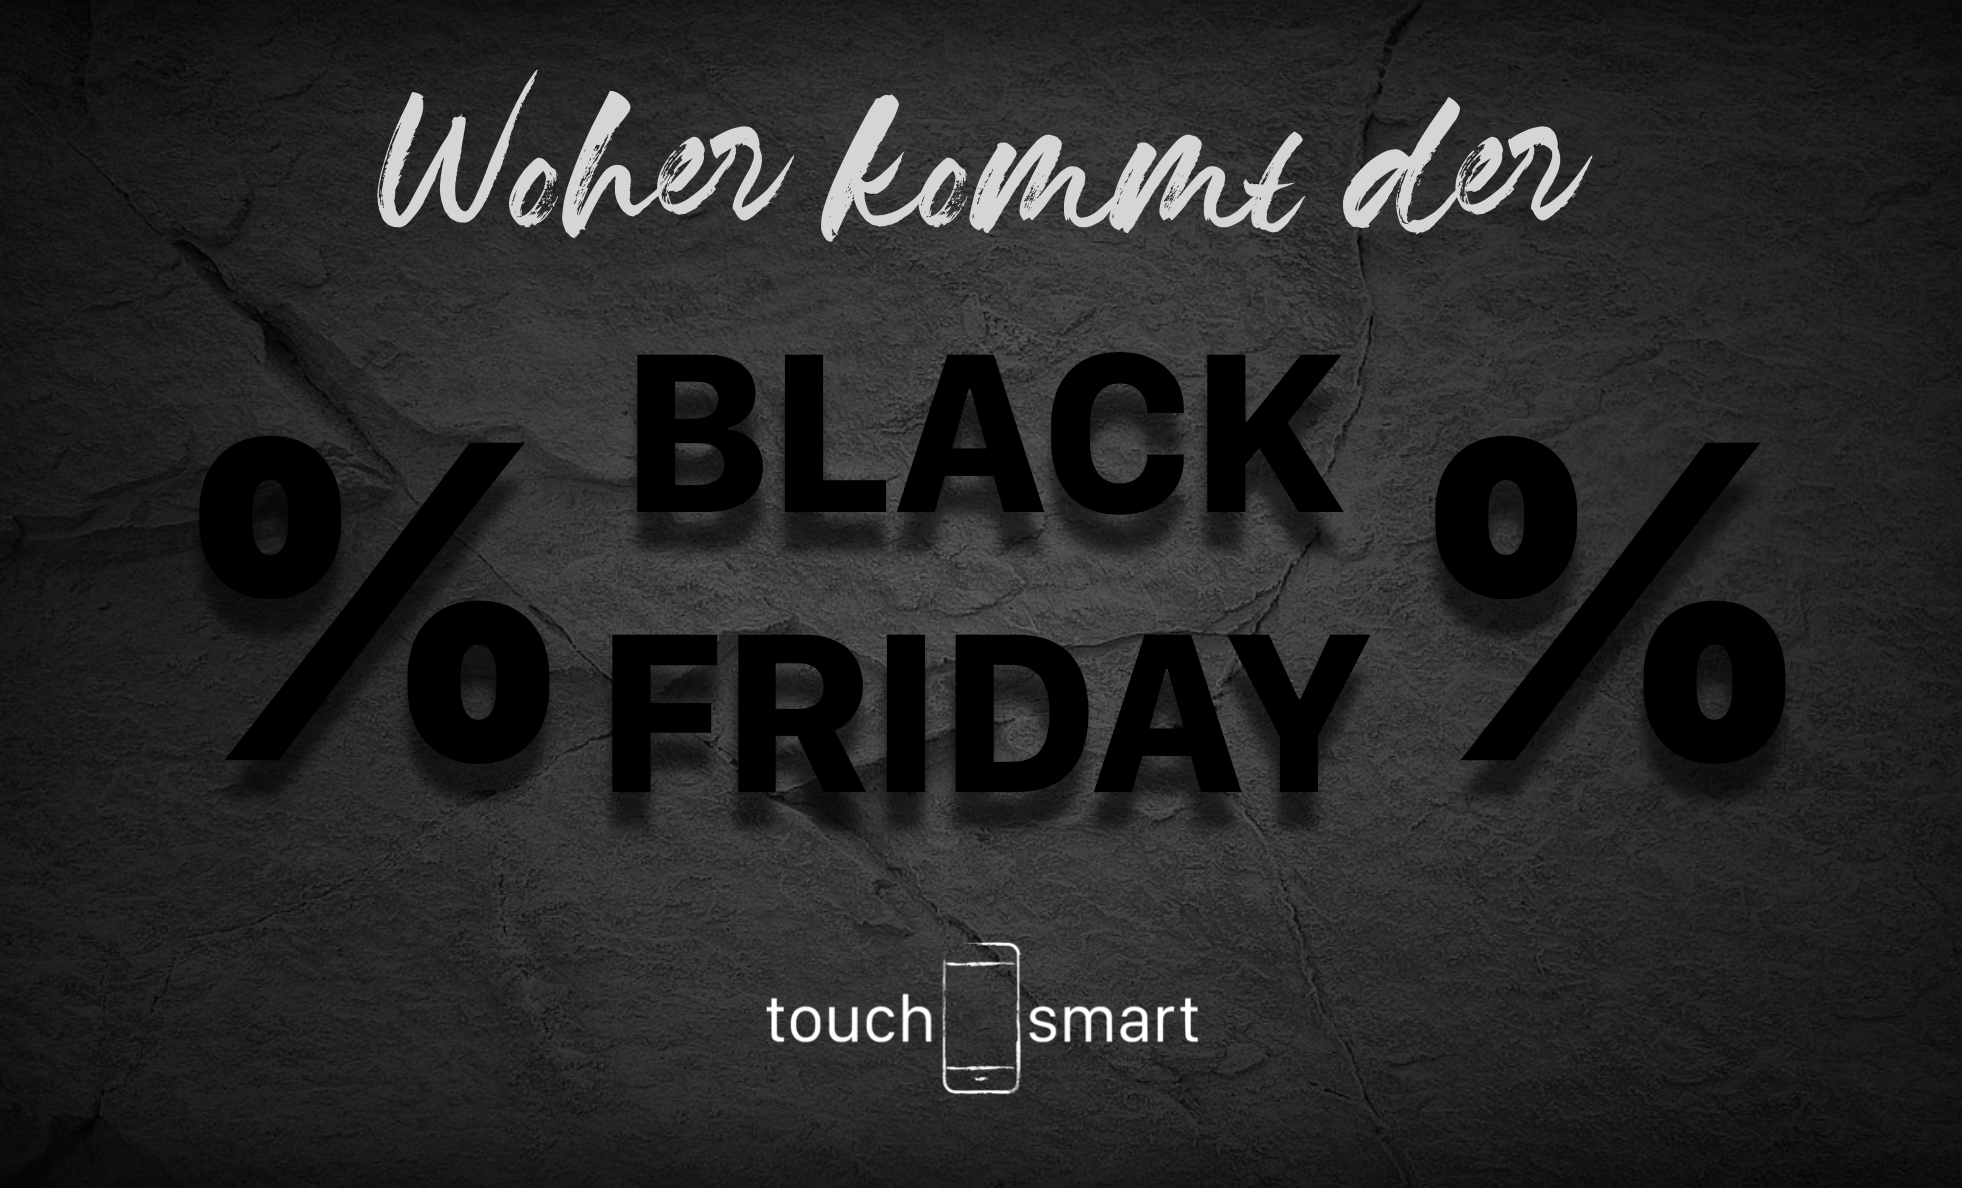 Woher kommt der black friday » touch smart